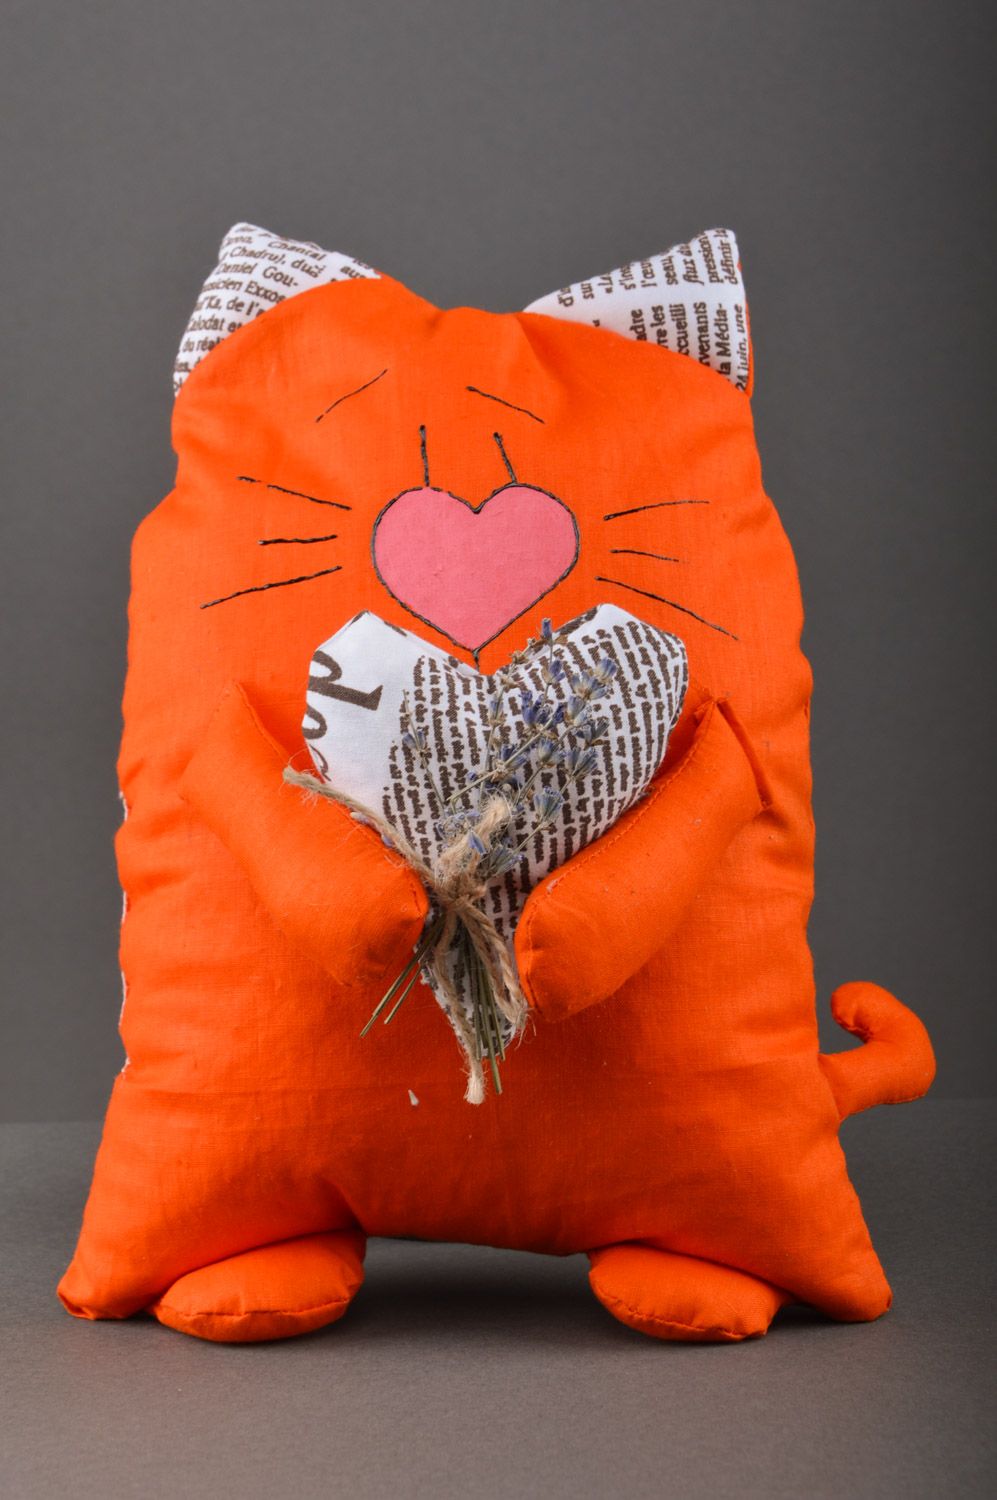 Sachet original blando con forma de gato con hierbas dentro anaranjado artesanal foto 1